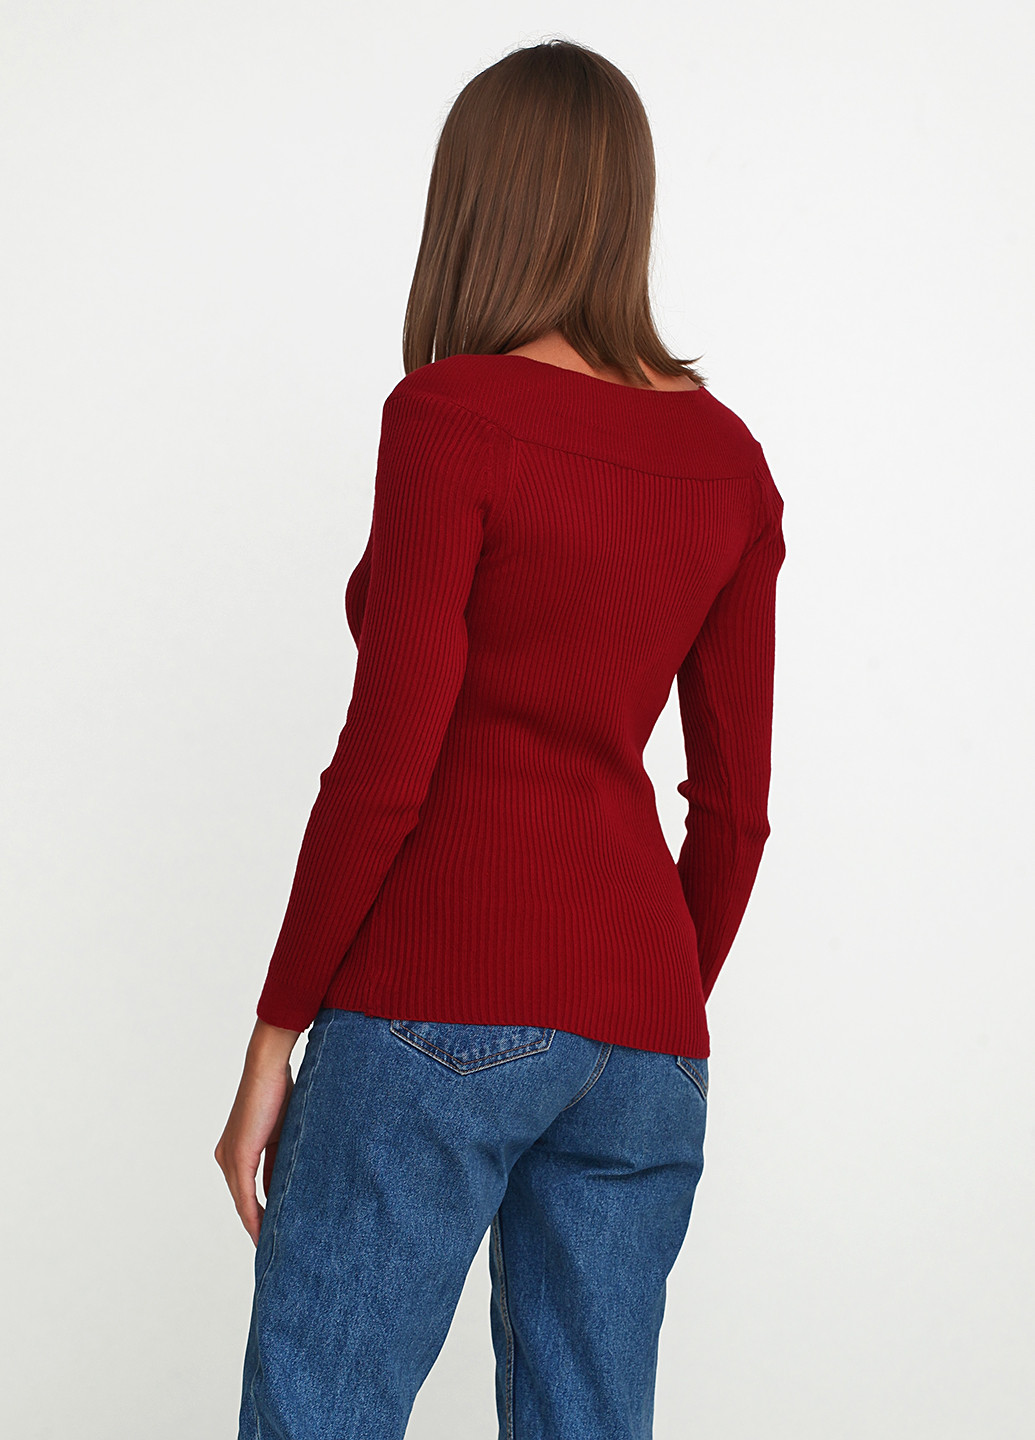 Бордовый демисезонный пуловер пуловер Akdeniz